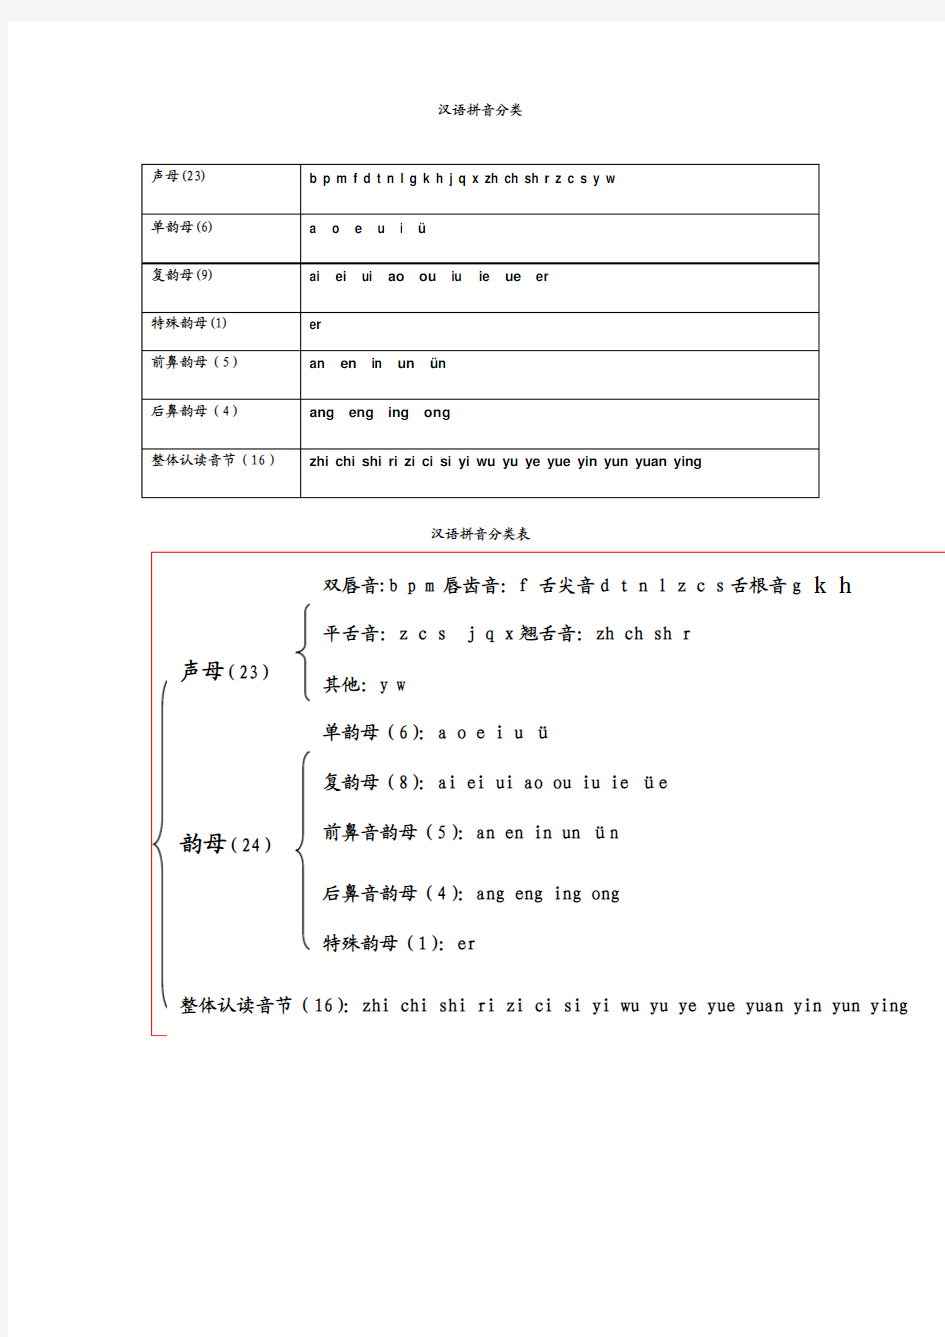 汉语拼音分类表[1]